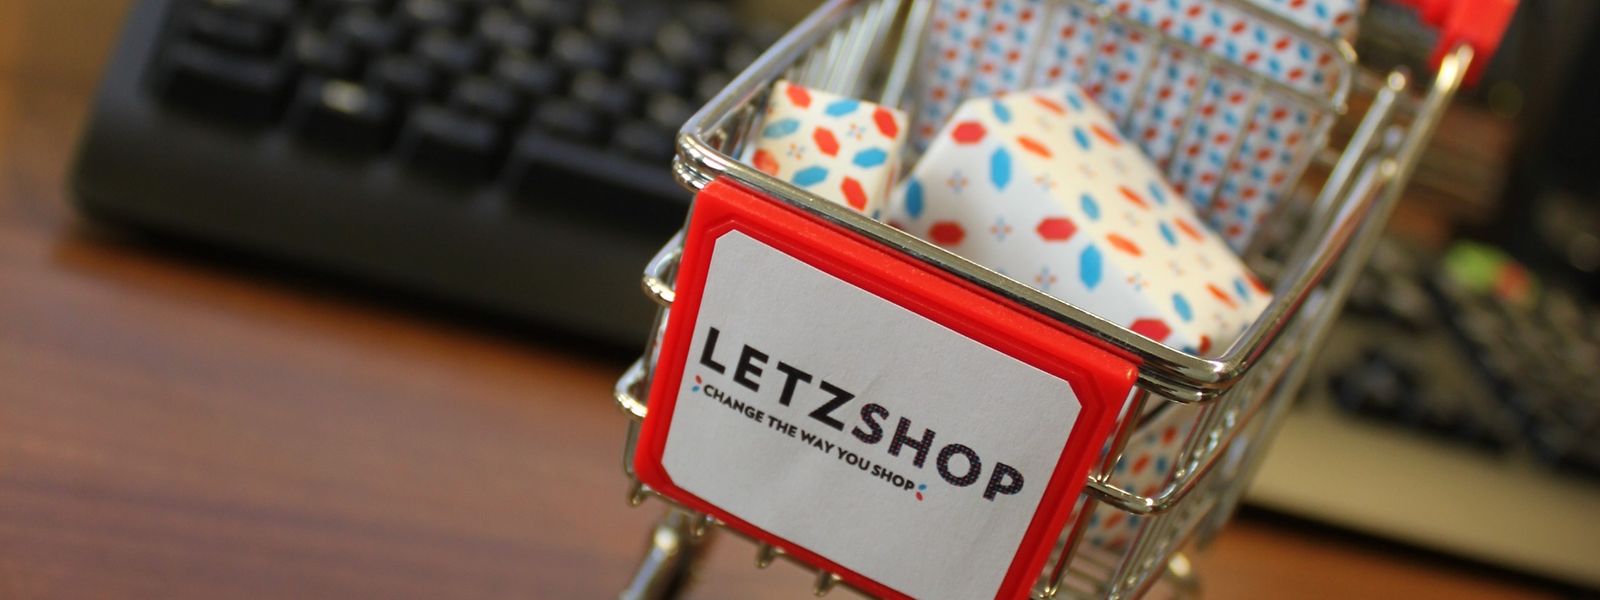 Die Onlineplattform Letzshop.lu, die den lokalen Handel unterstützen und kleinen Betrieben einen Online-Auftritt ermöglichen will, bekam durch die Pandemie regen Zulauf.